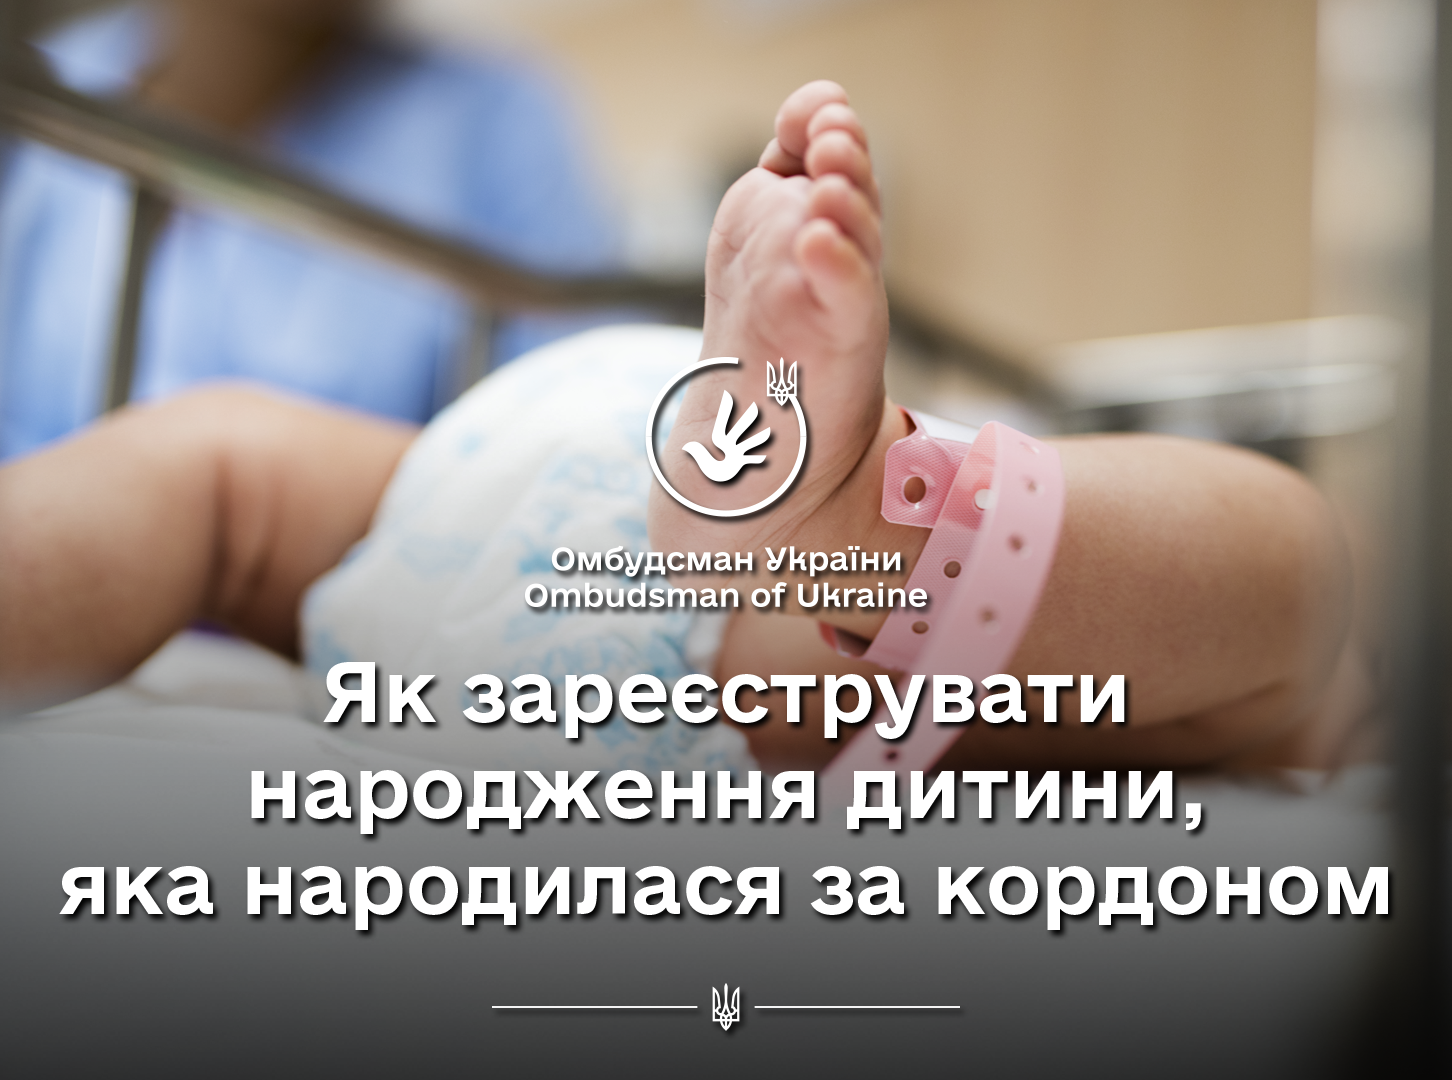 Реєстрація народження дитини за кордоном для українських громадян: процедура та вимоги